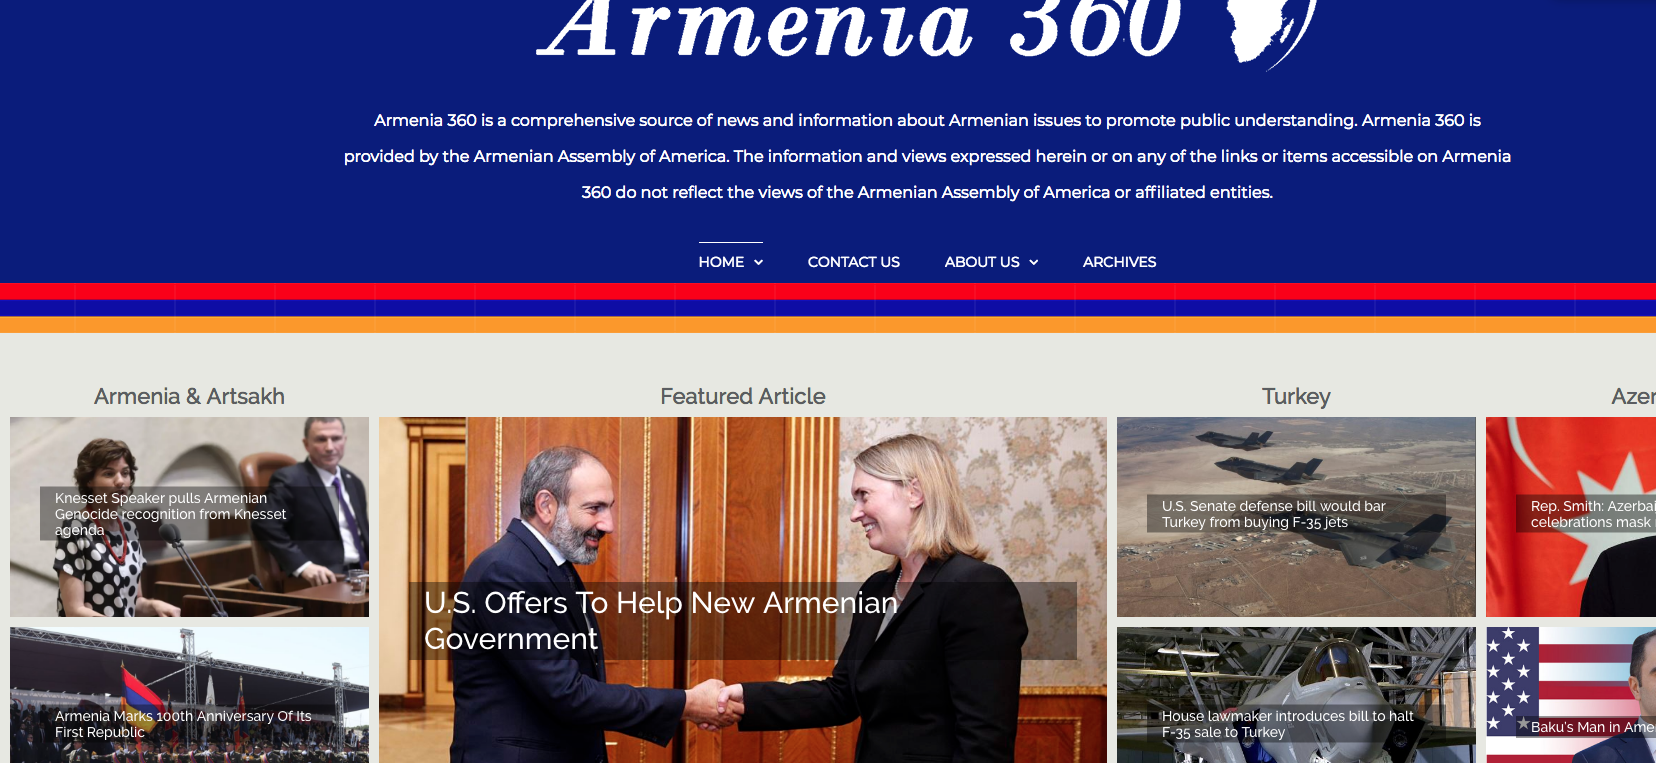 Amerikan Ermeni Asamblesi "Ermenistan 360" sitesini hayata geçirdi.